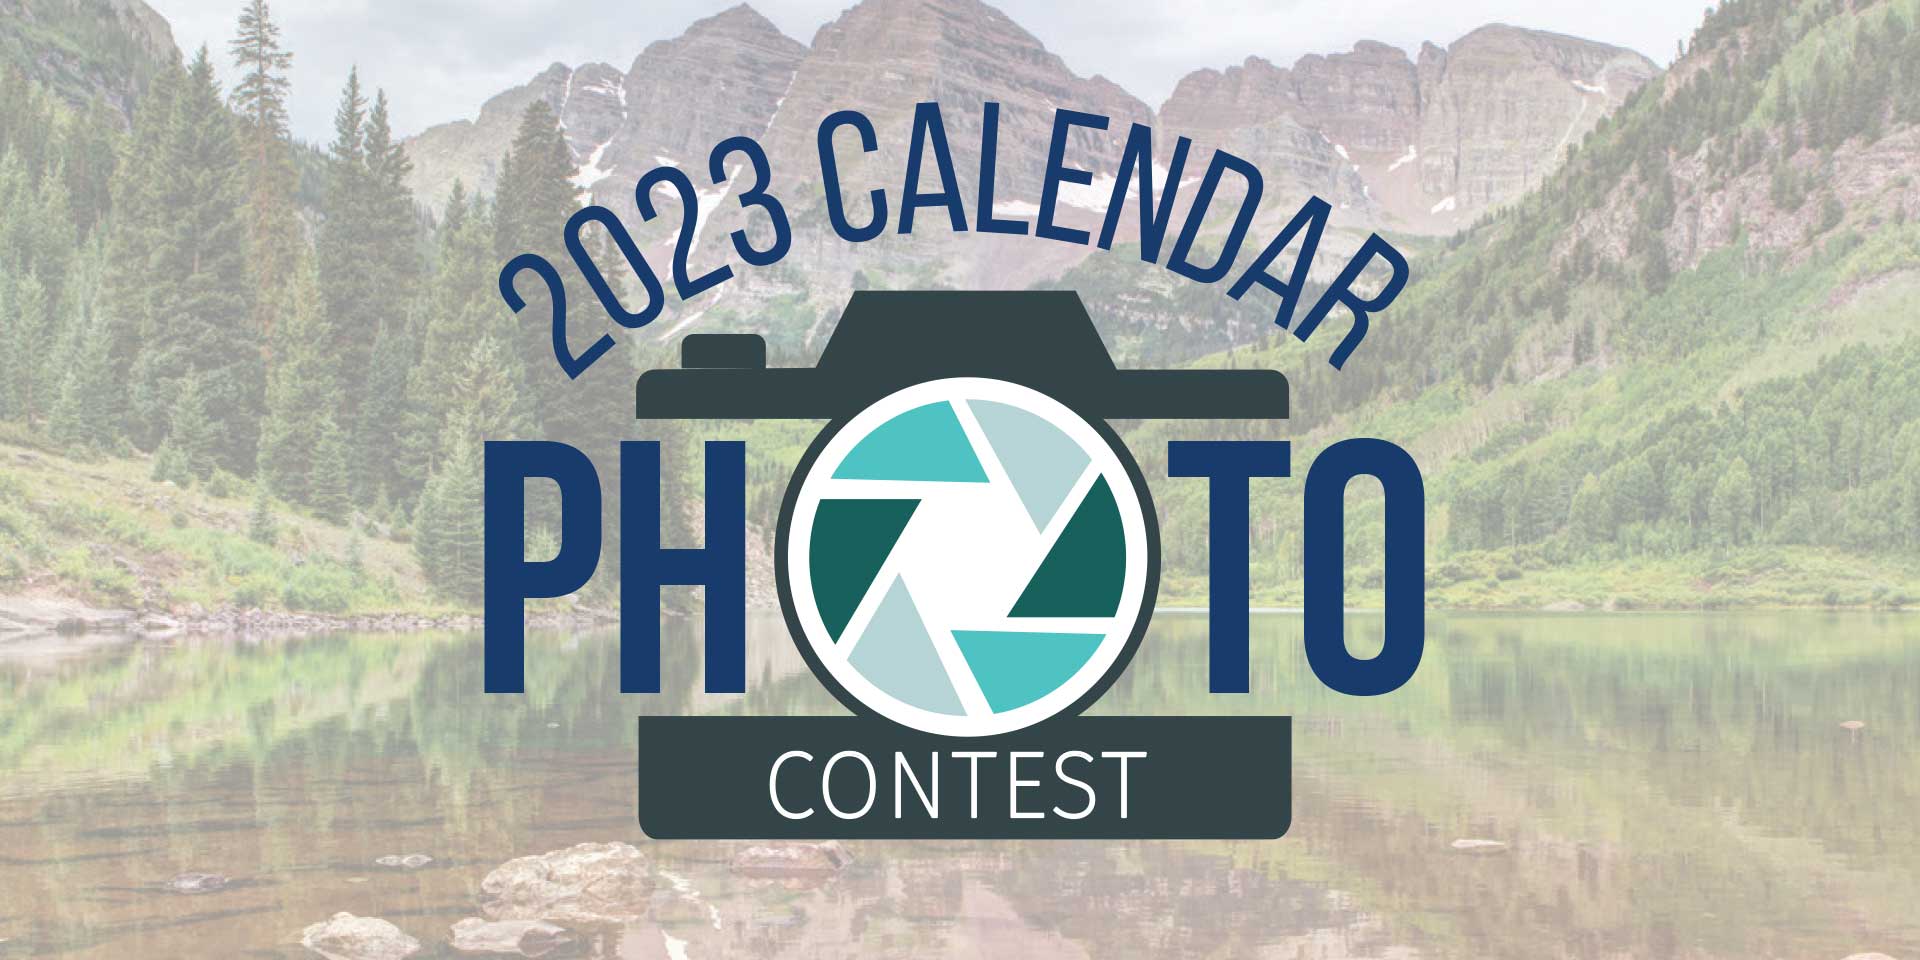 2023 Calendar Photo Contest